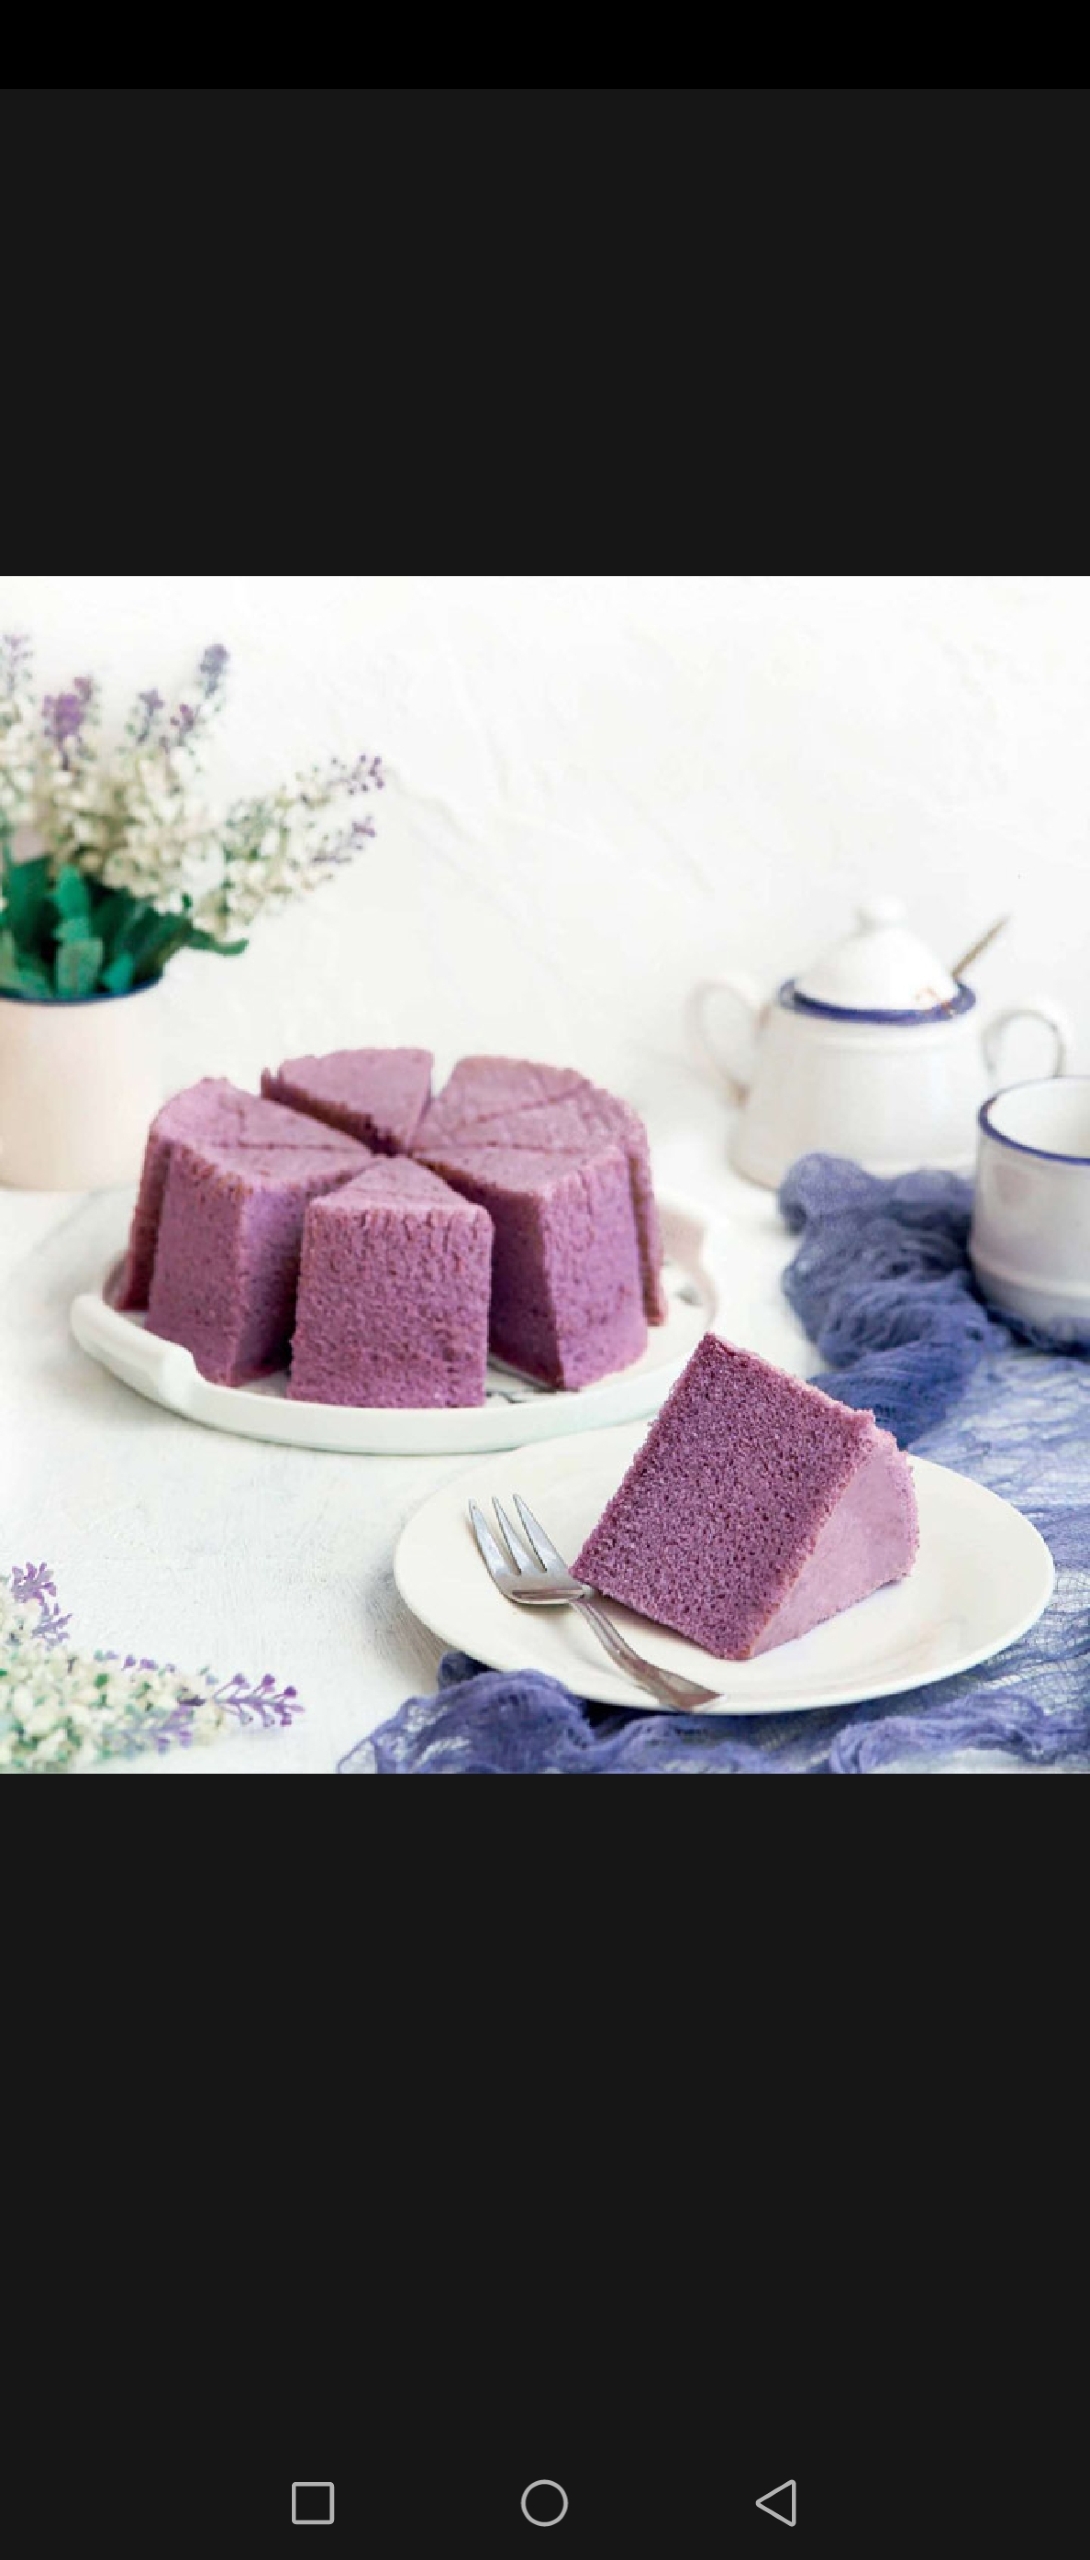 紫薯蒸蛋糕